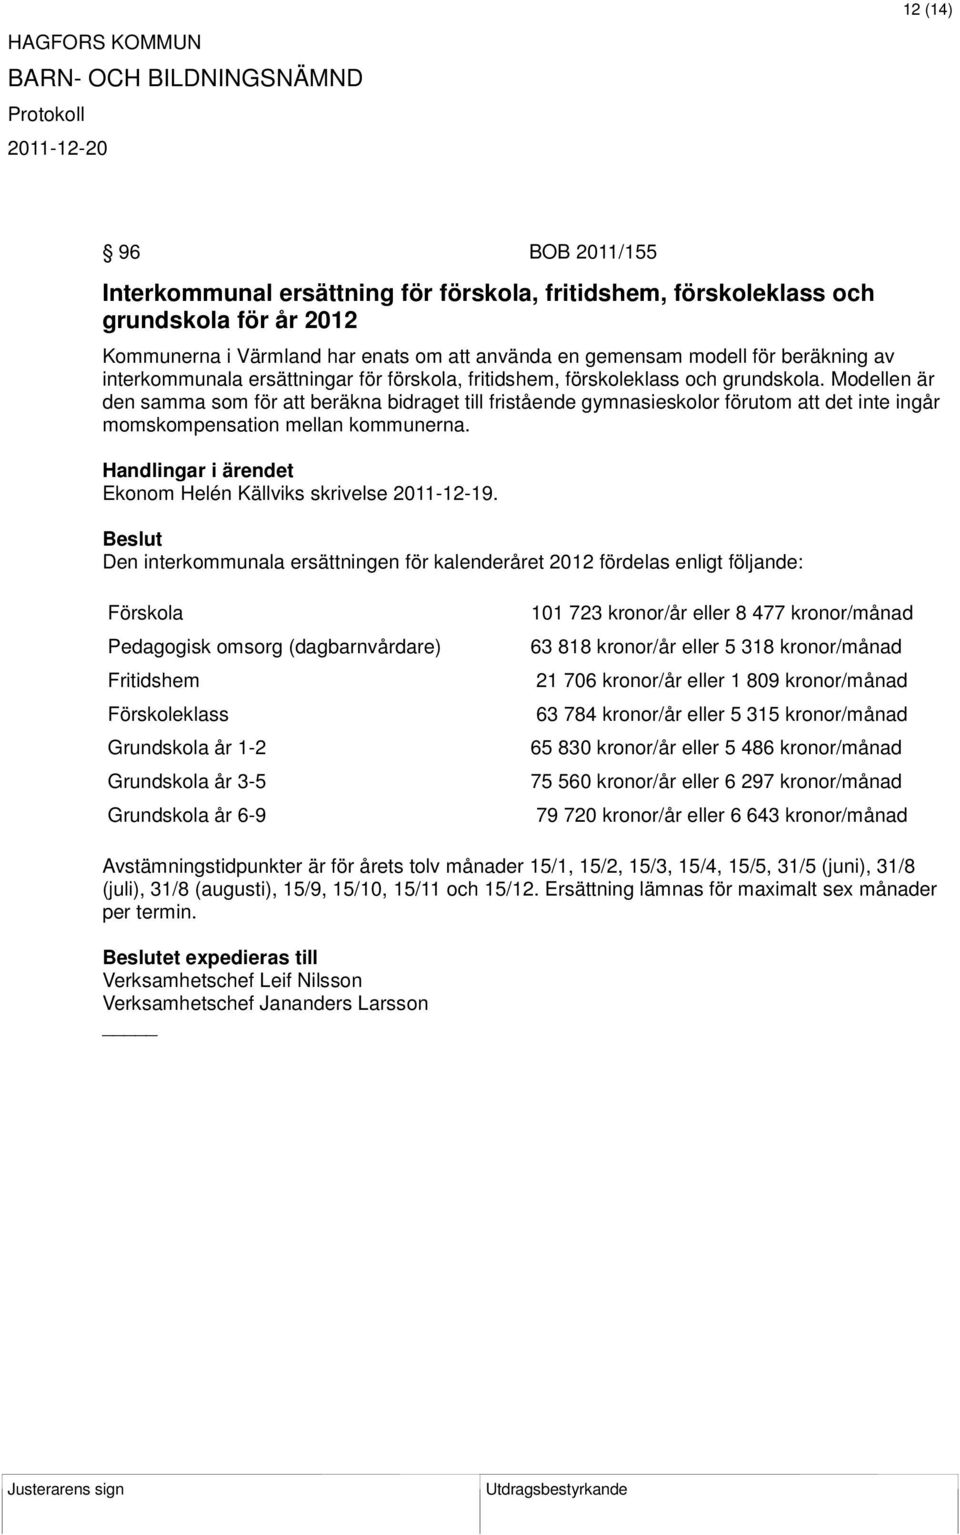 Modellen är den samma som för att beräkna bidraget till fristående gymnasieskolor förutom att det inte ingår momskompensation mellan kommunerna. Ekonom Helén Källviks skrivelse 2011-12-19.